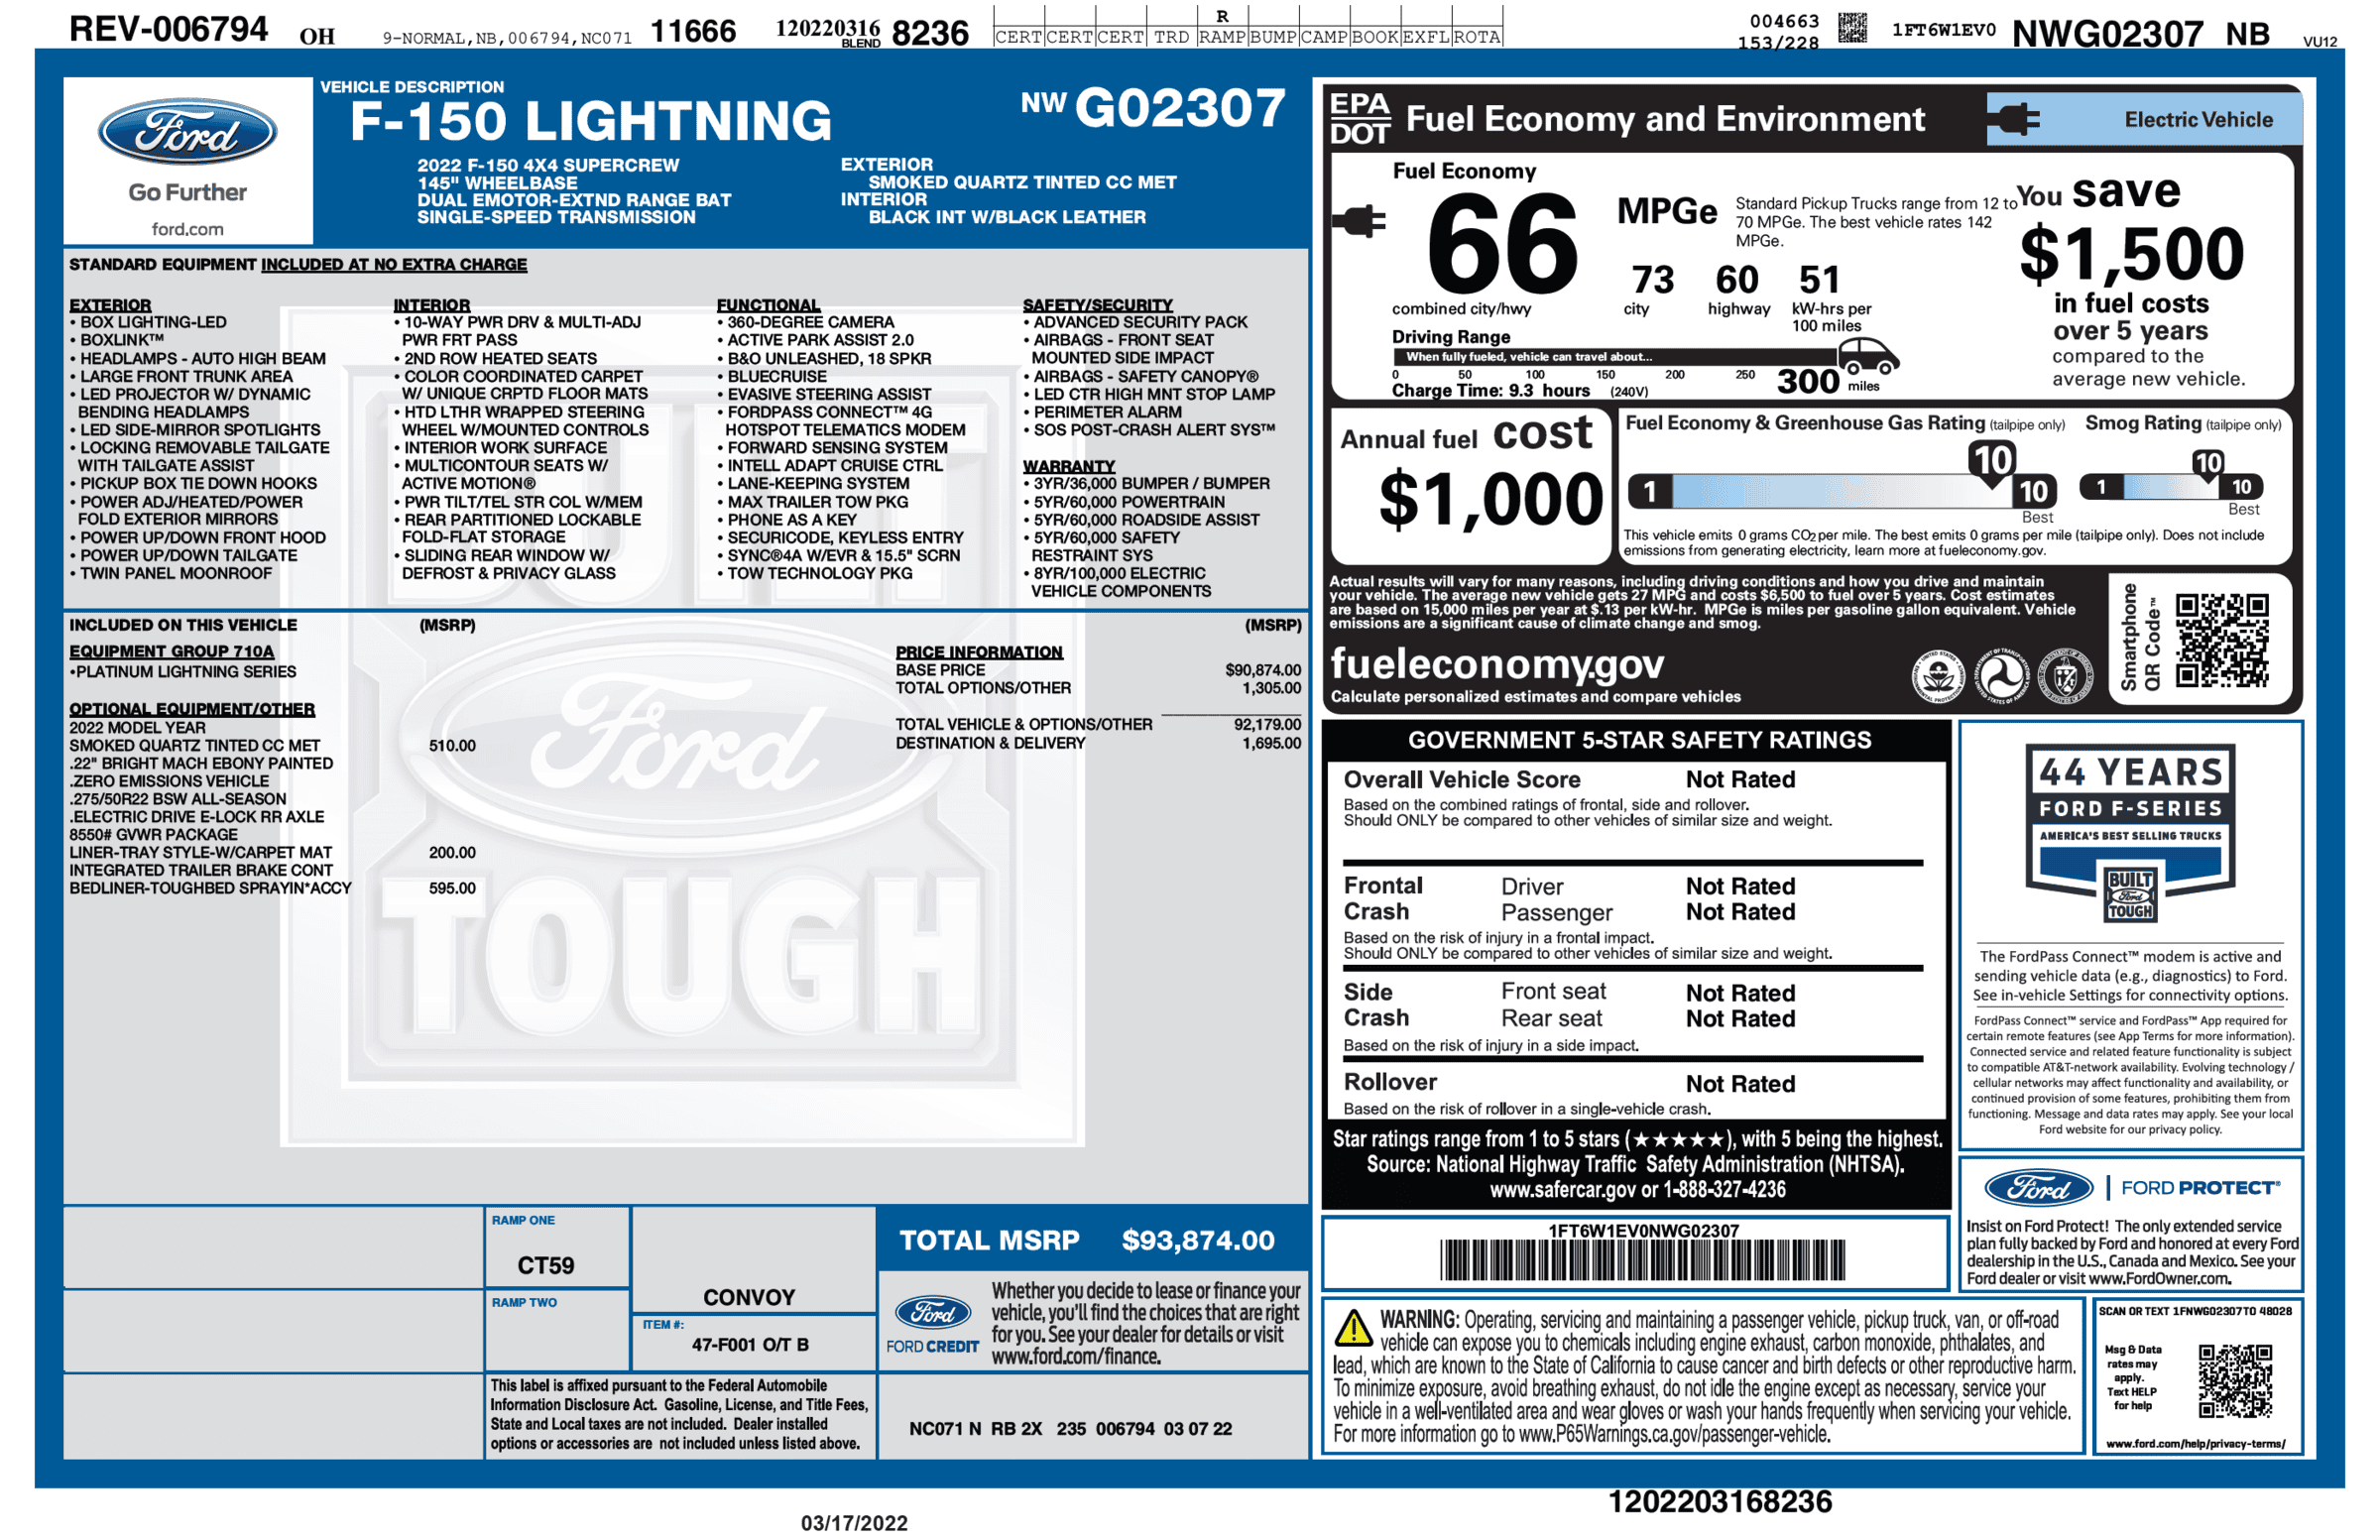 Ford F-150 Lightning F-150 Lightning Official EPA Range MPGe Revealed in Window Sticker (Base + Extended Range)! 1647534462501-